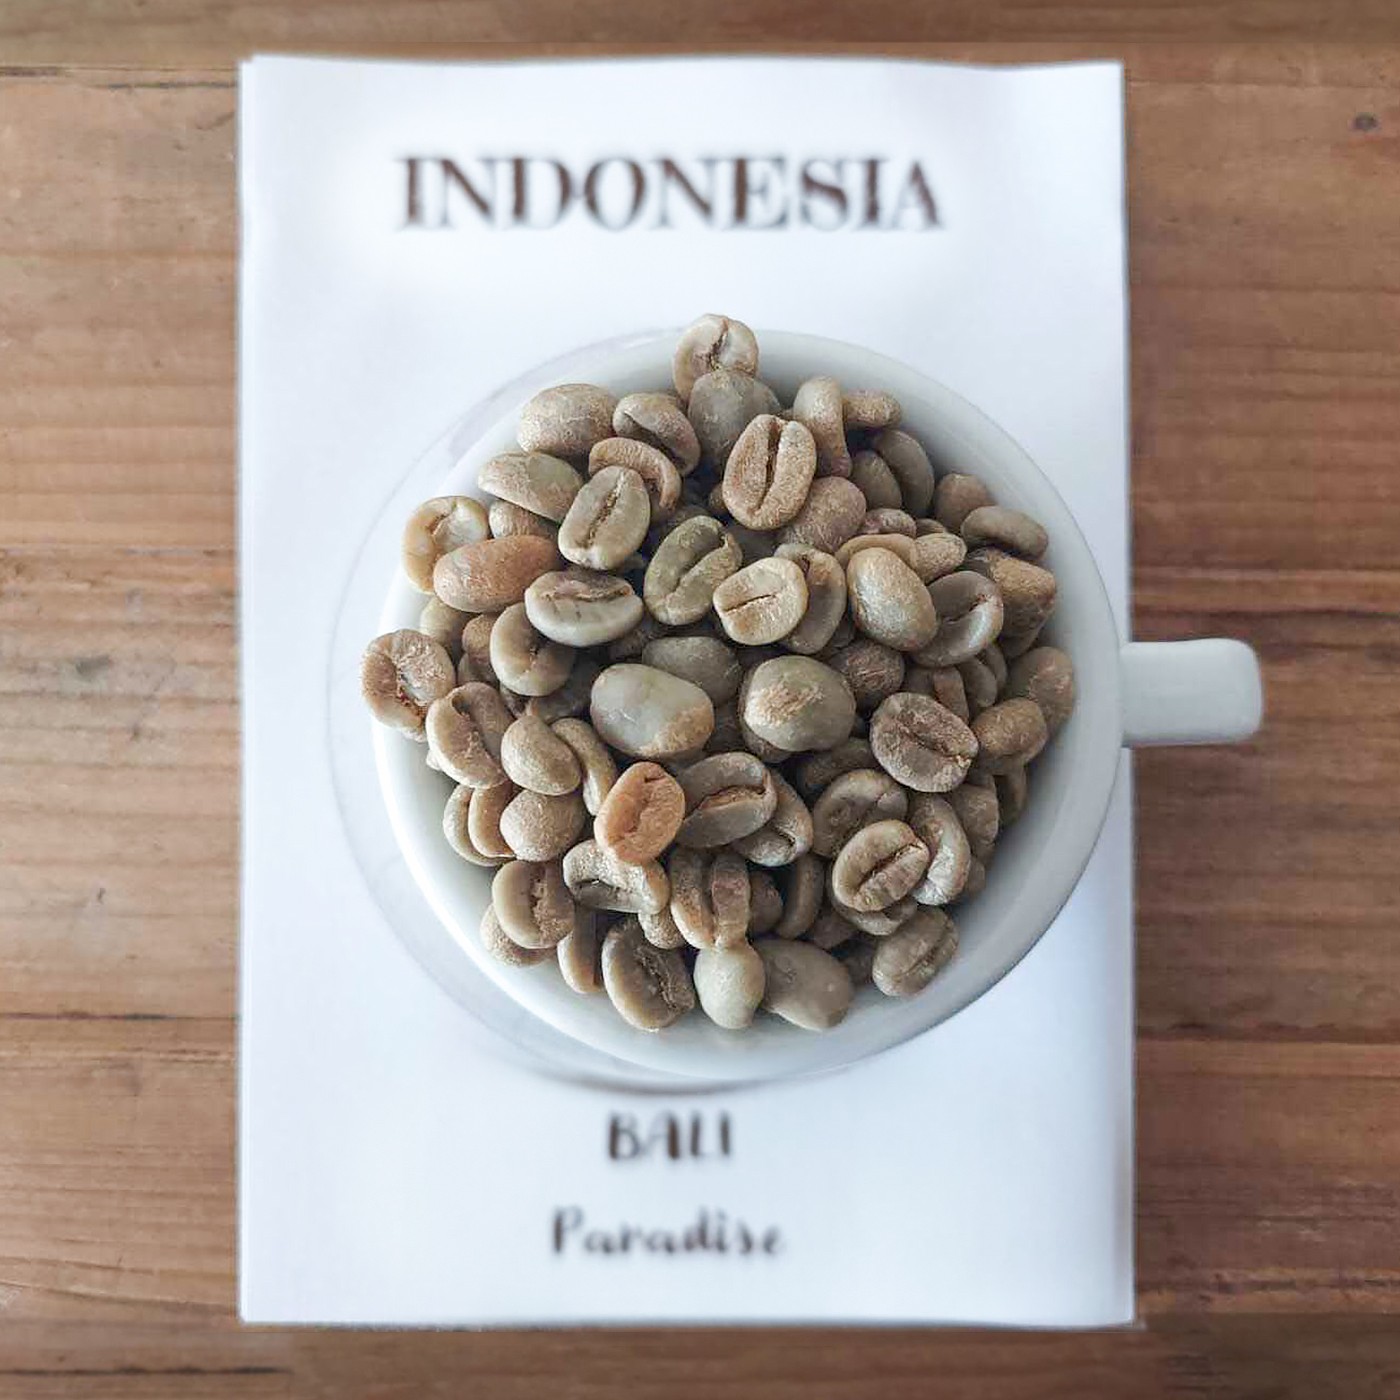 Indonesia Bali Caffè Fusari